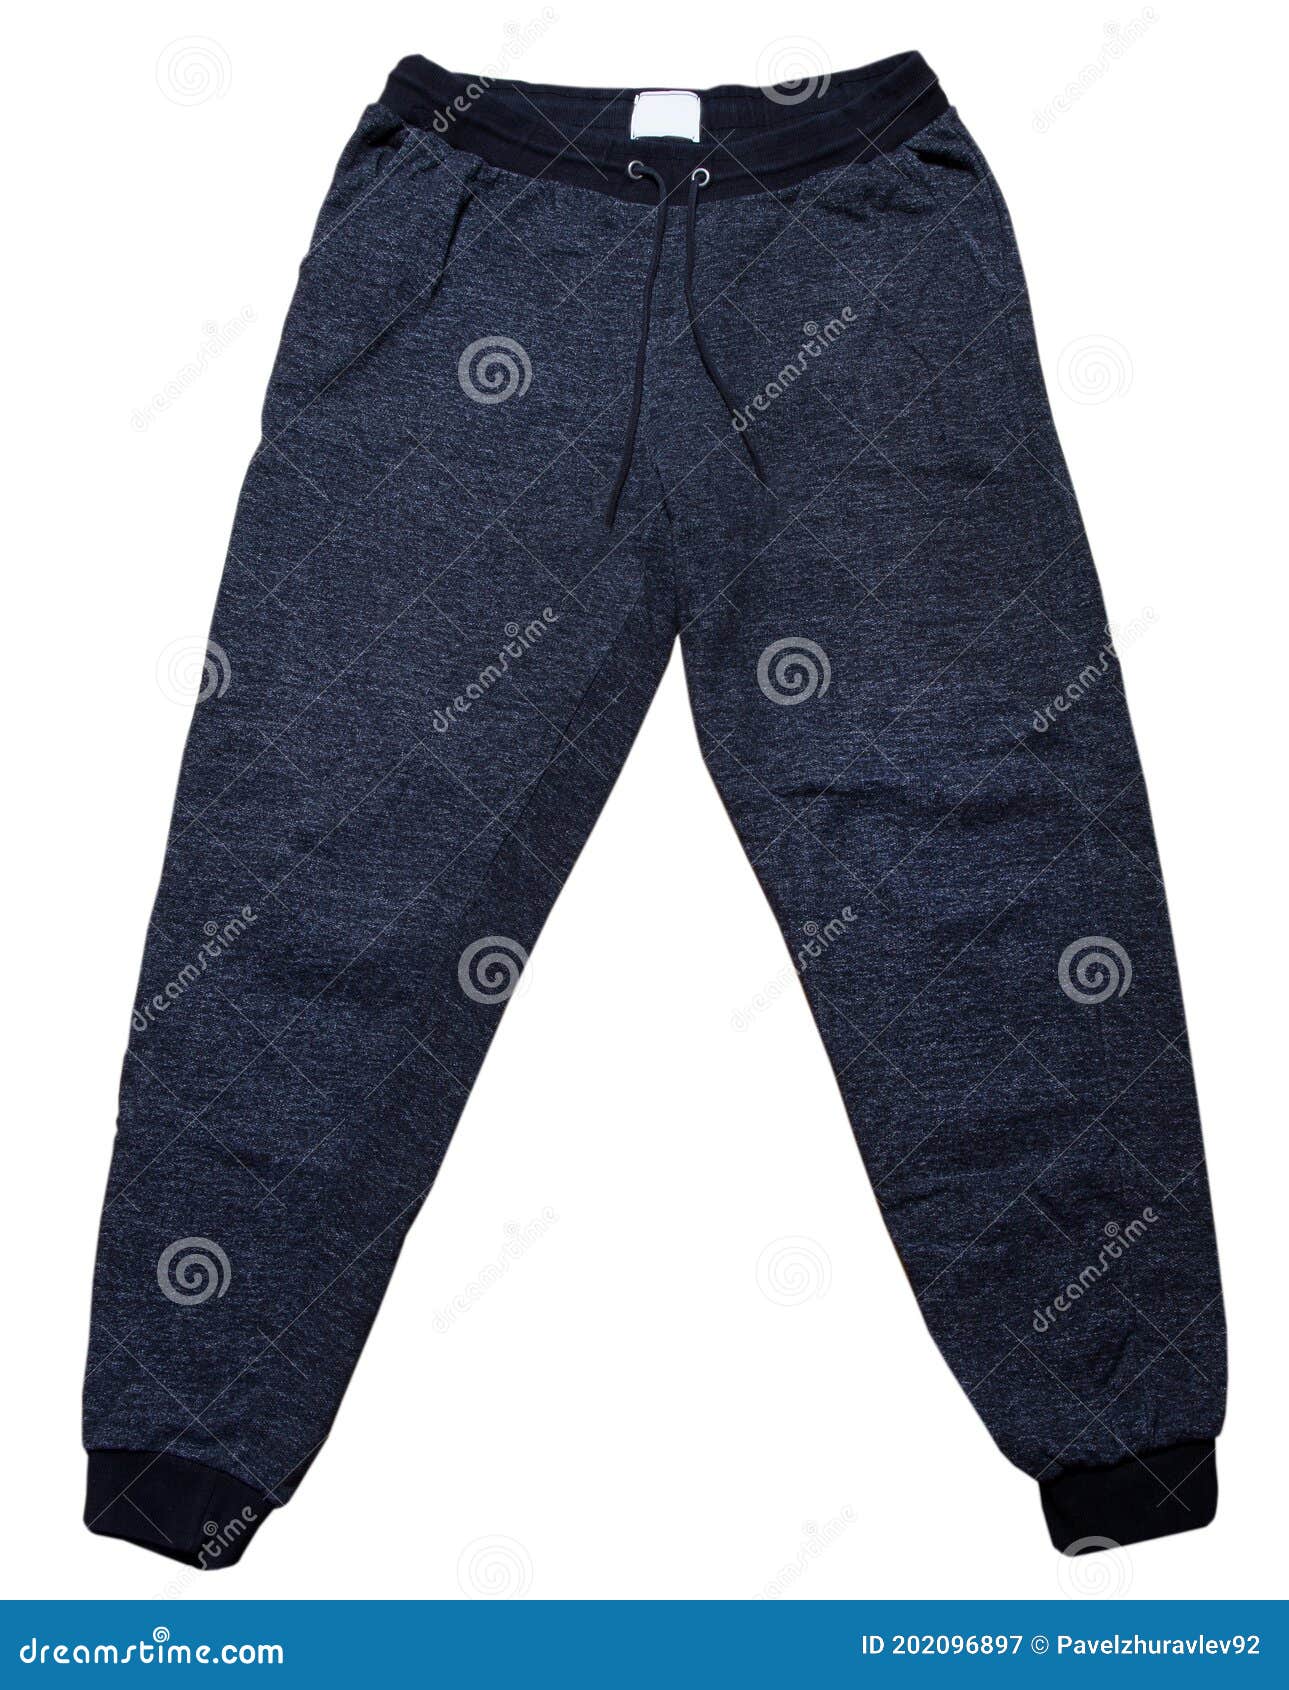 Dark Grey Sweatpants Close Up Isolated on White Background Stock Image ...